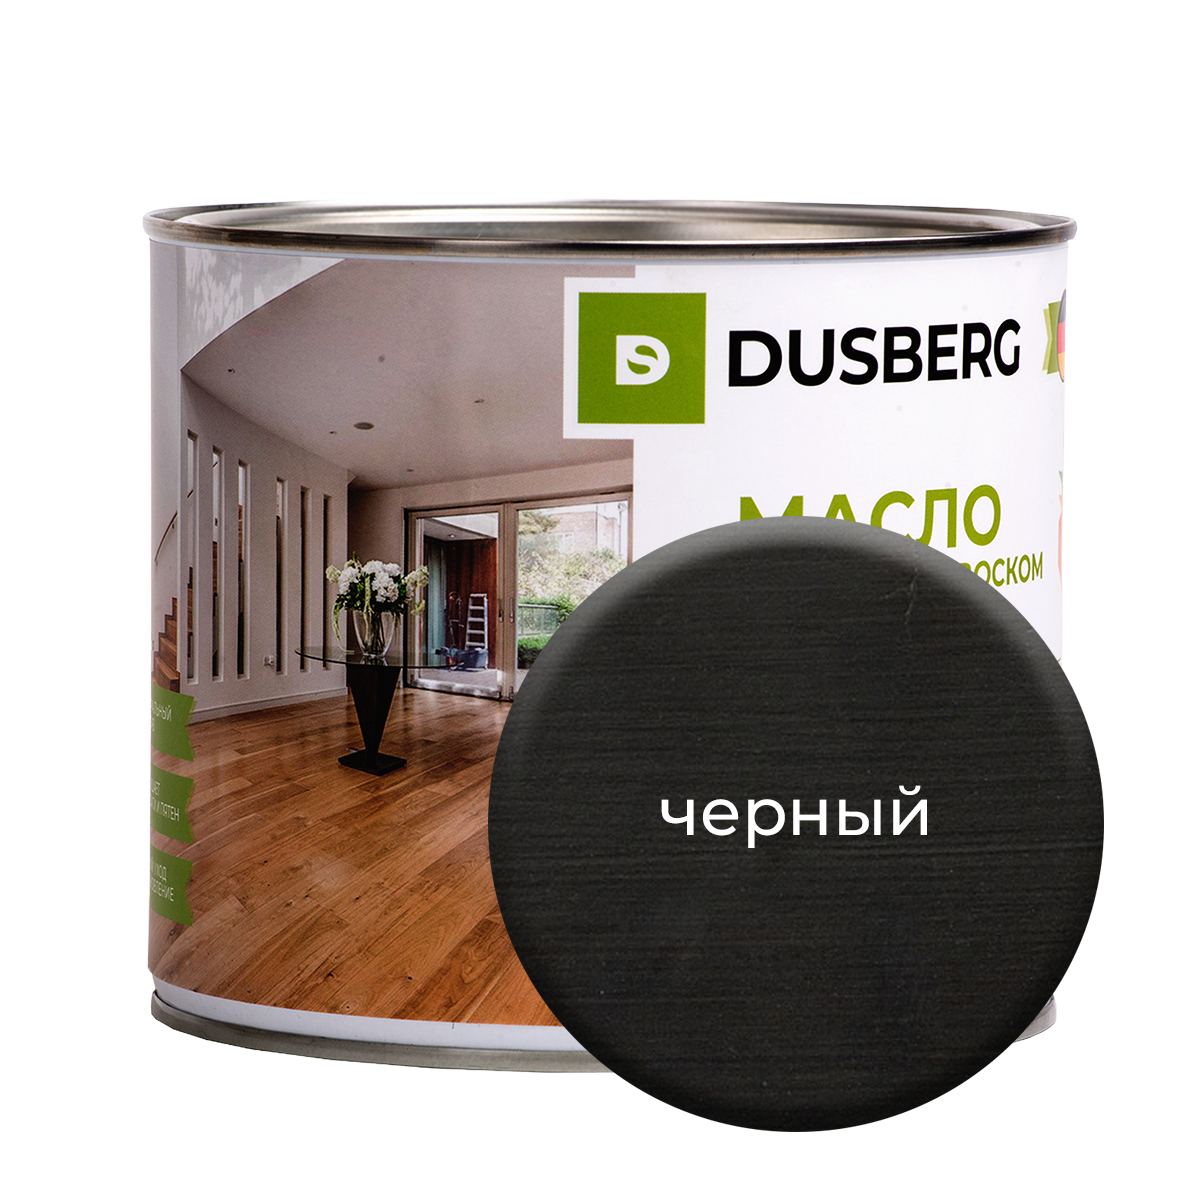 Масло Dusberg с твердым воском на бесцветной основе, 2 л Черный масло dusberg для дерева на бесцветной основе 750 мл голдохор